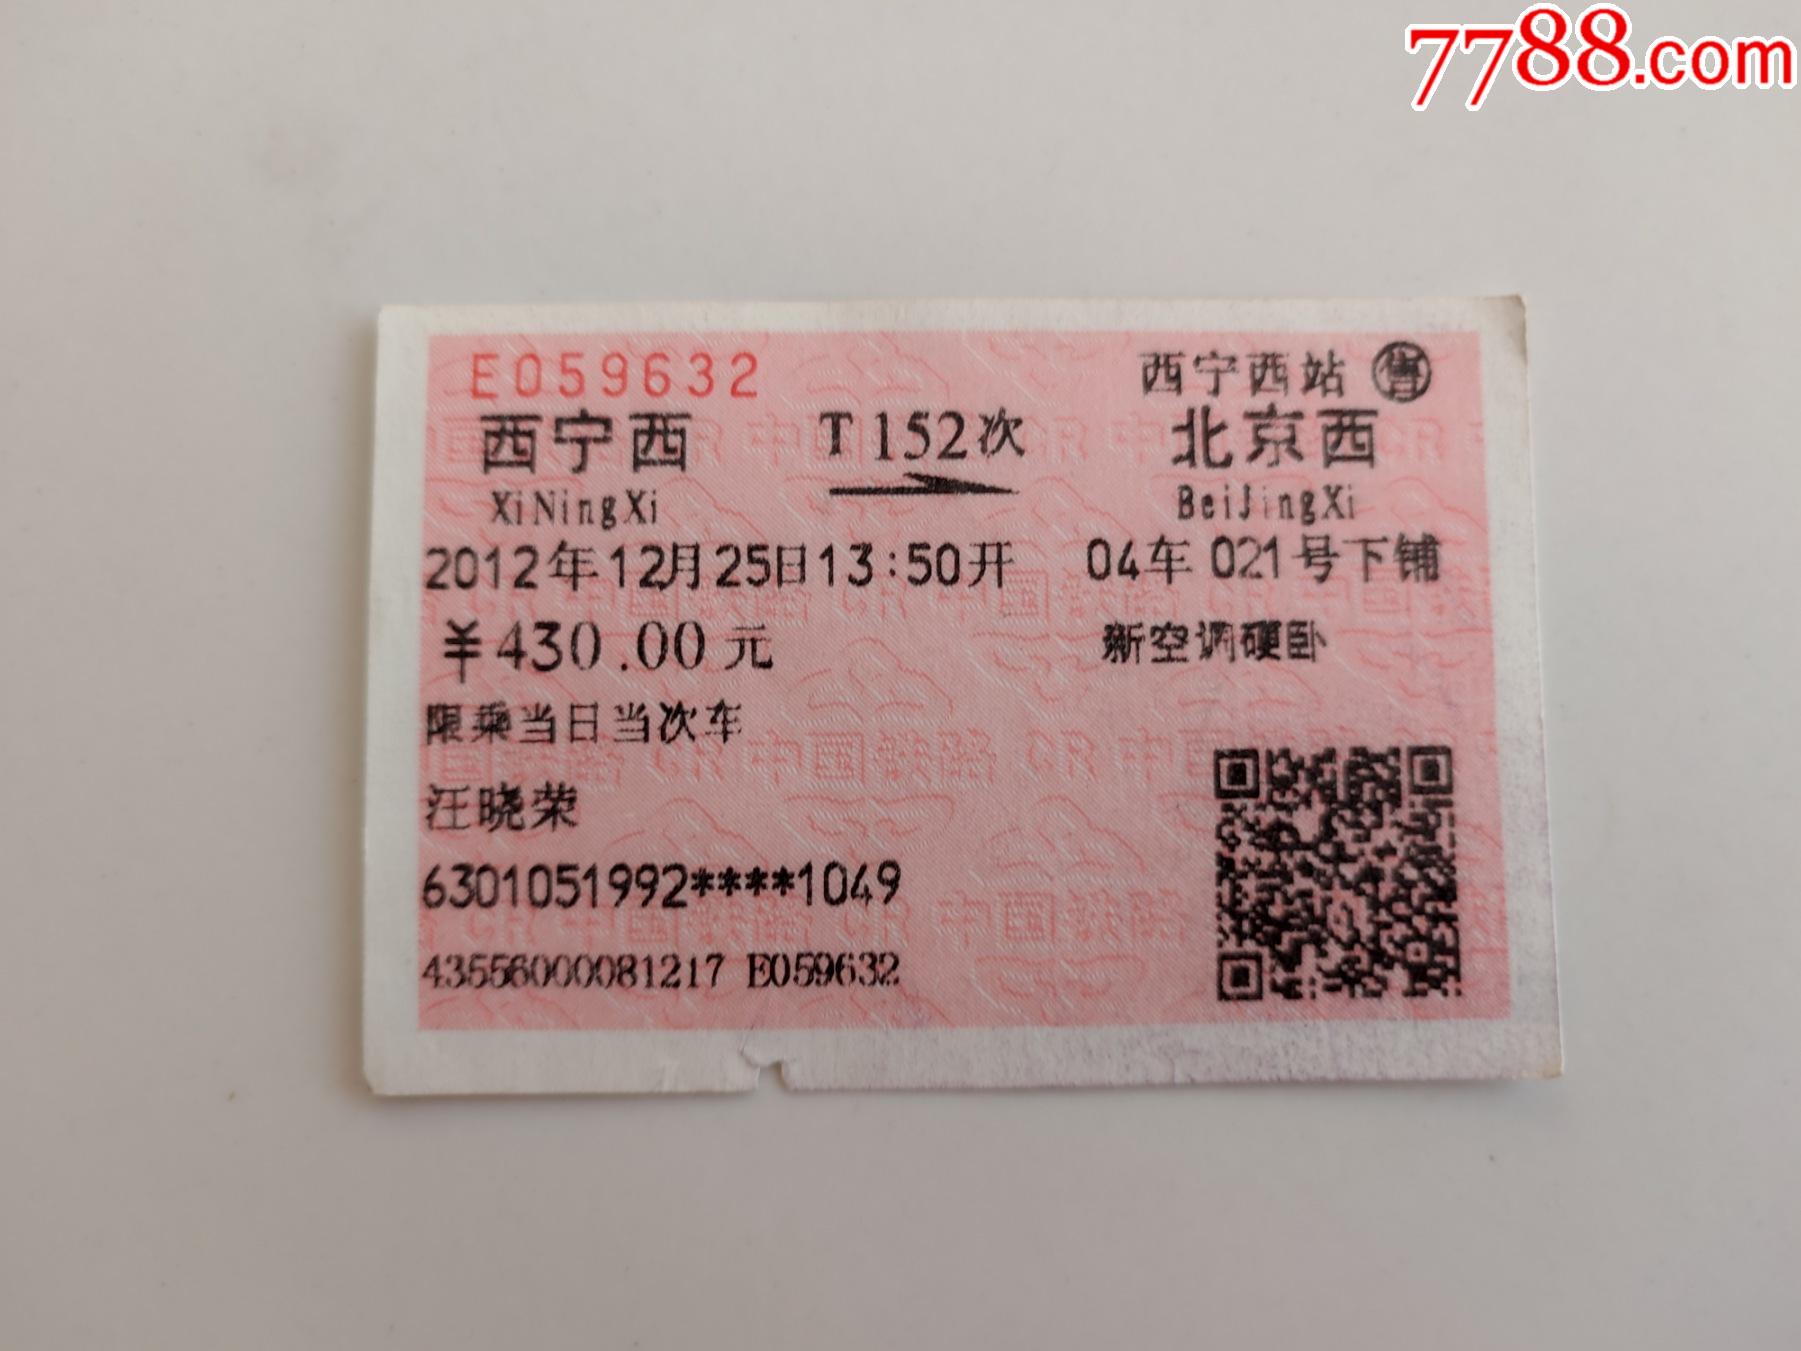 西宁西-t152次-北京西-价格:4元-se84706028-火车票-零售-7788收藏